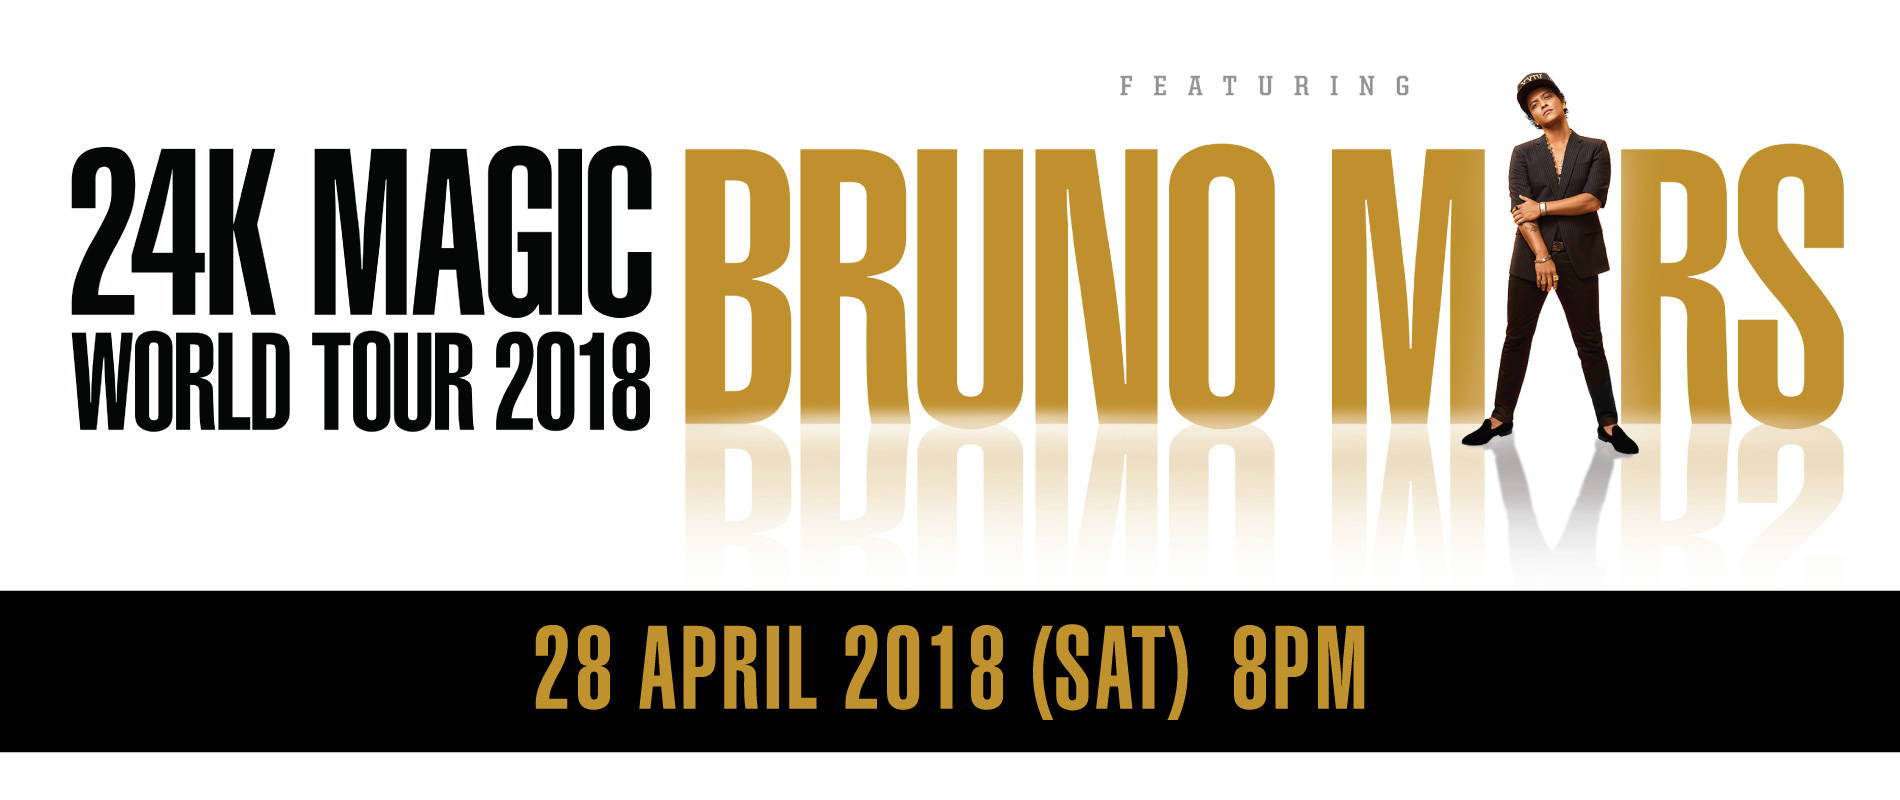 Bruno Mars - 24K Magic World Tour Thumbnail Picture